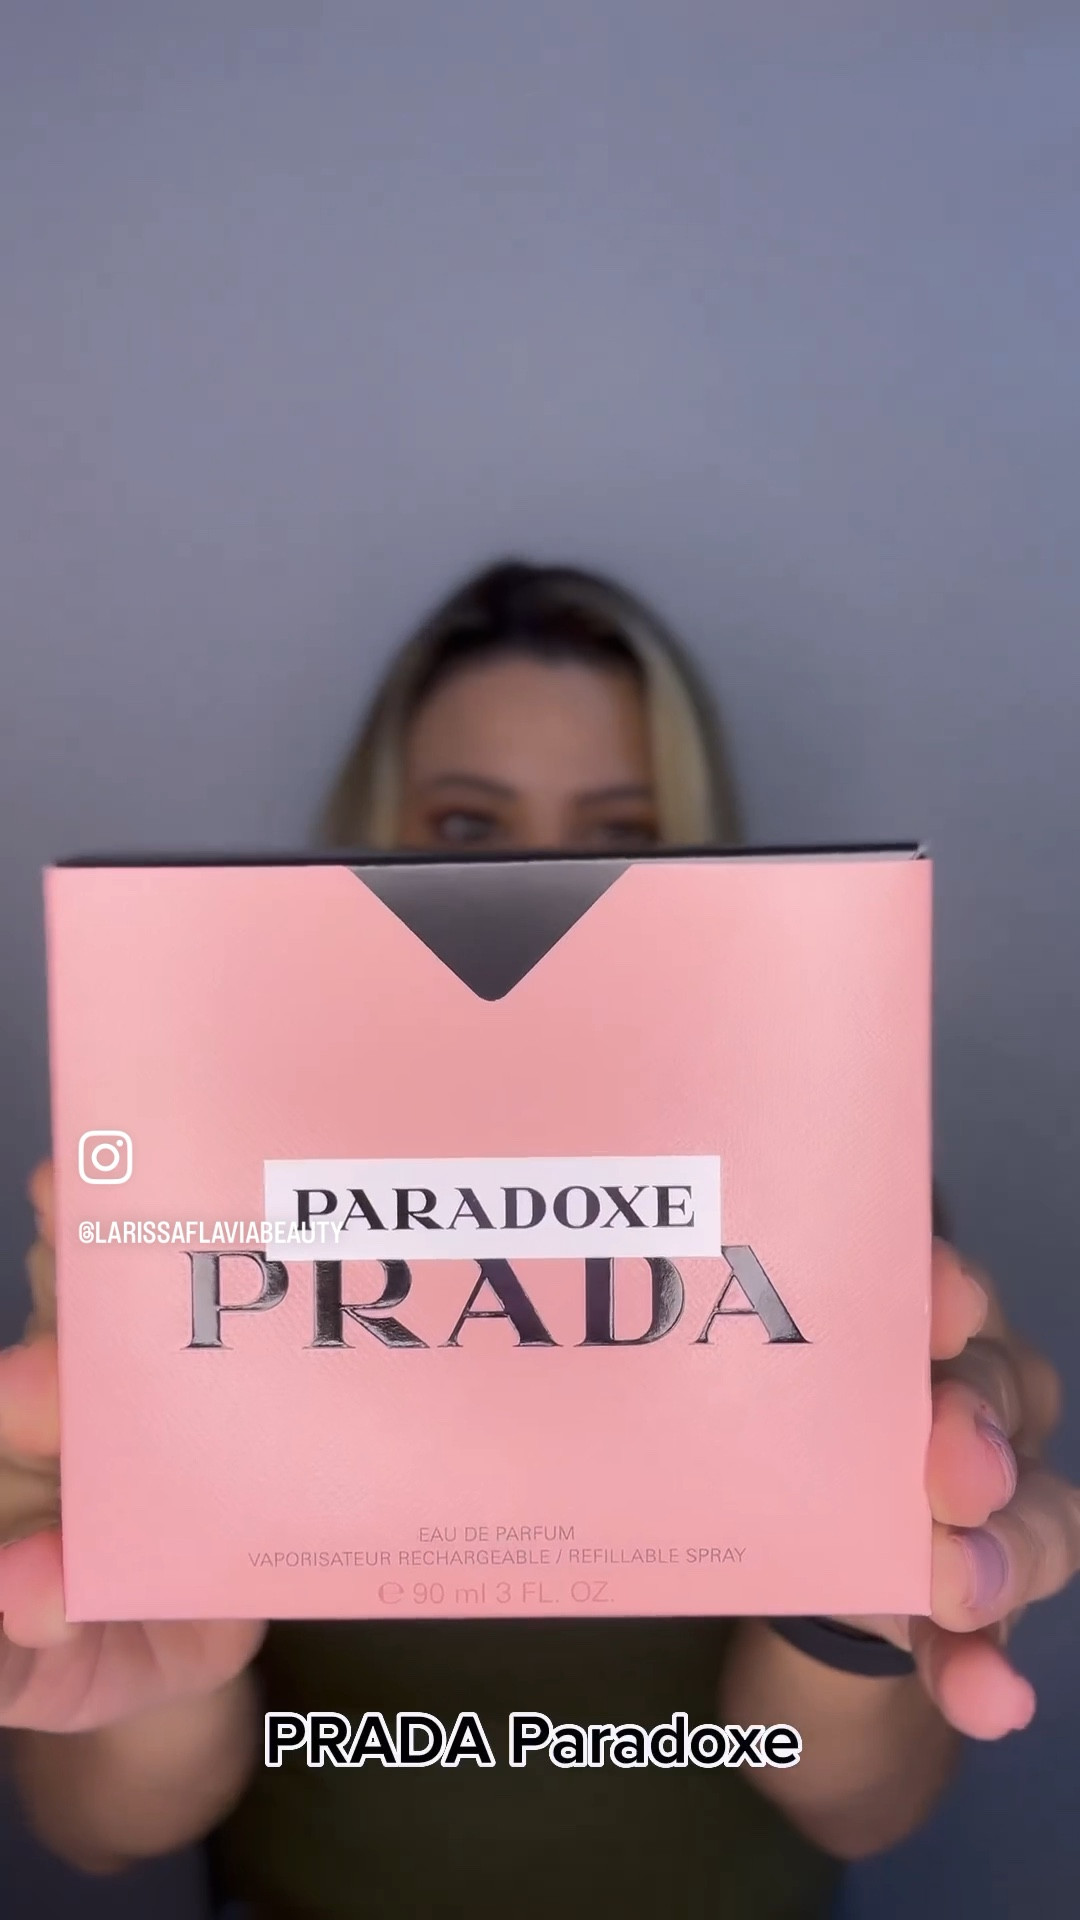 Prada Paradoxe Eau de Parfum Gift Set